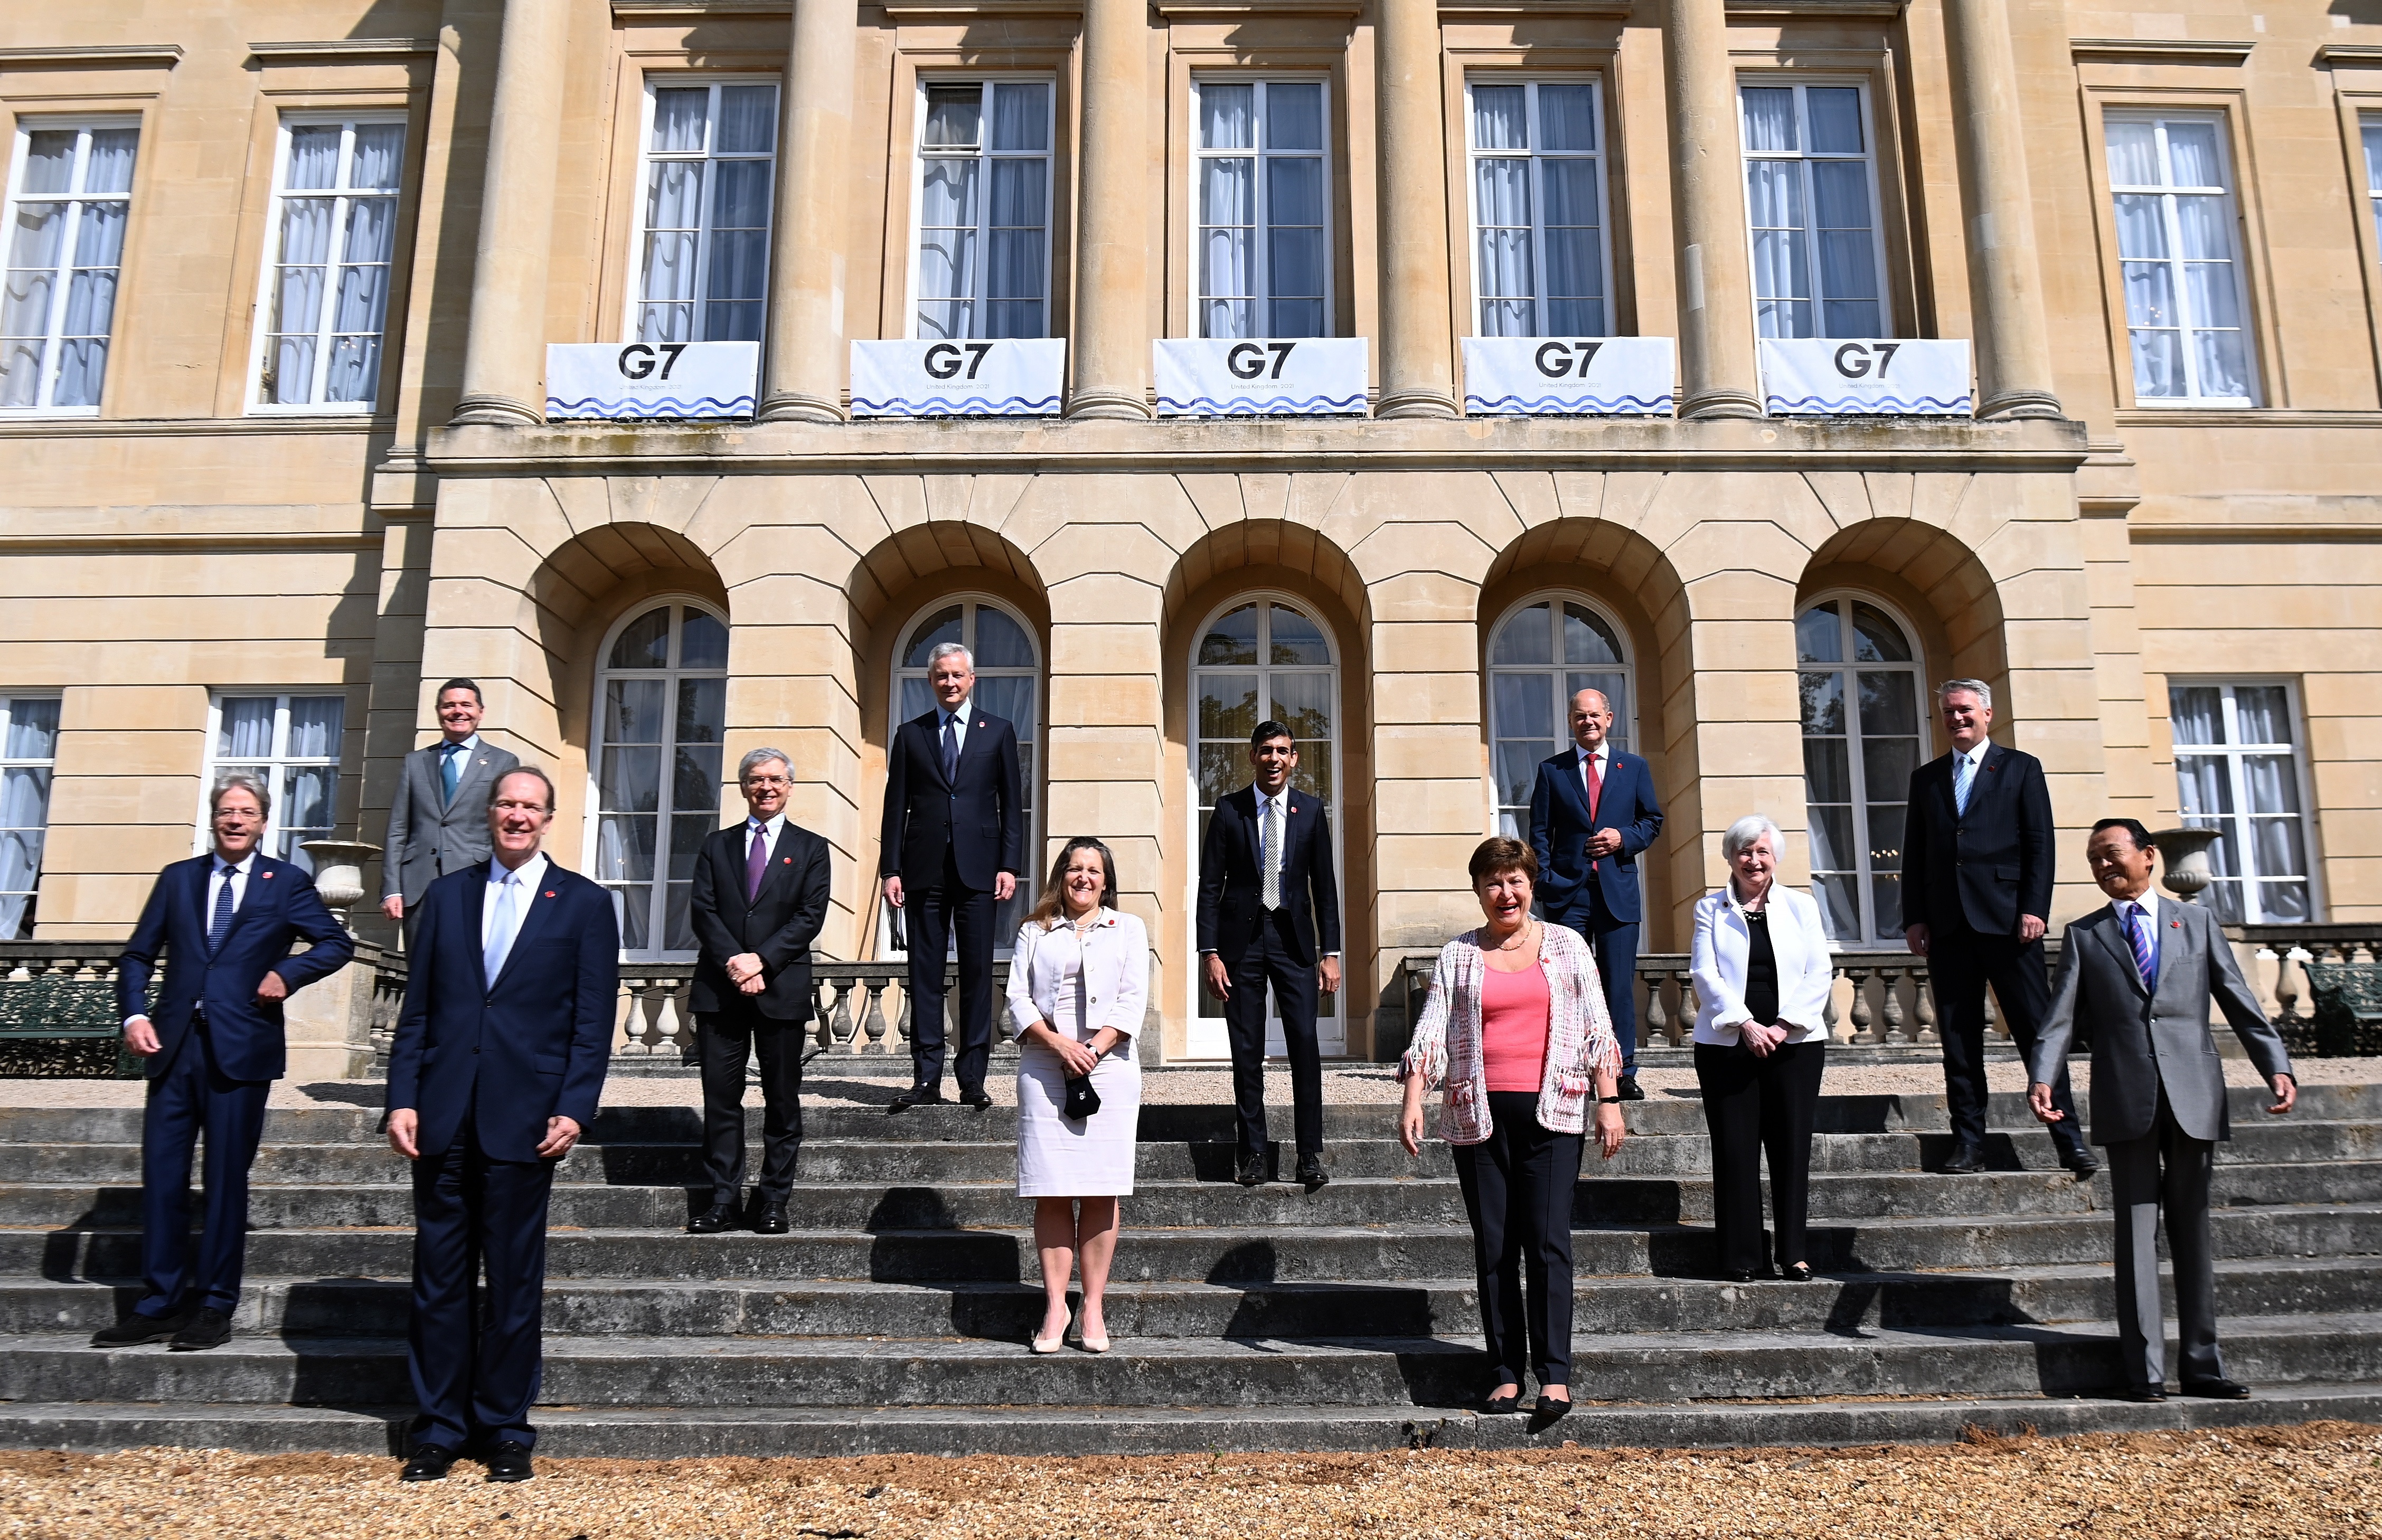 El G7 alcanza un "histórico" acuerdo para reformar el sistema fiscal global